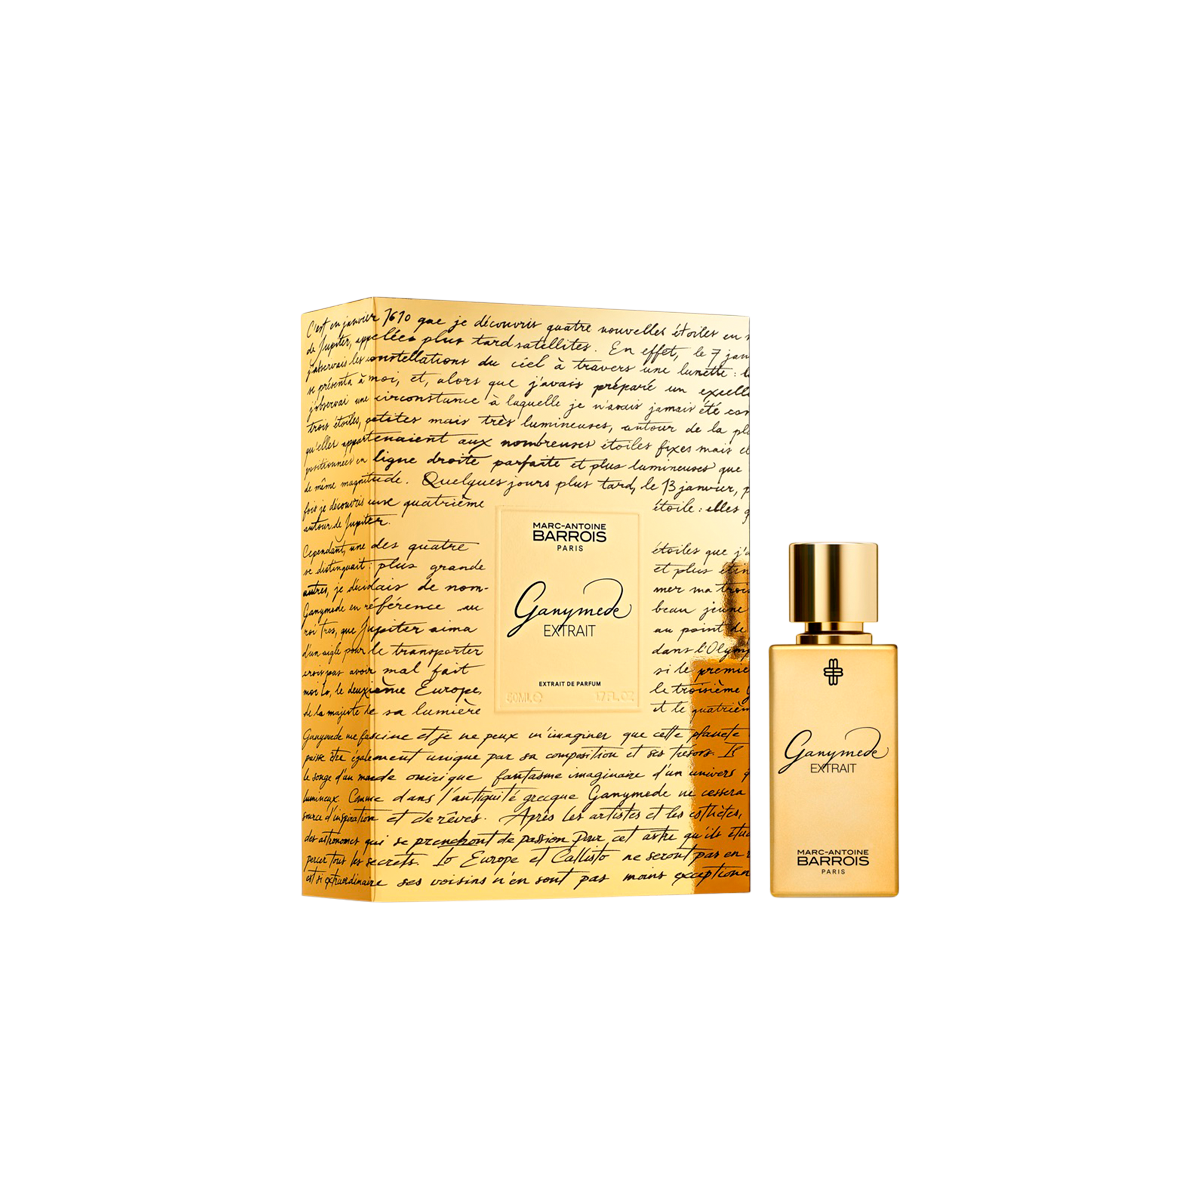 Marc-Antoine Barrois - Ganymede Extrait de Parfum